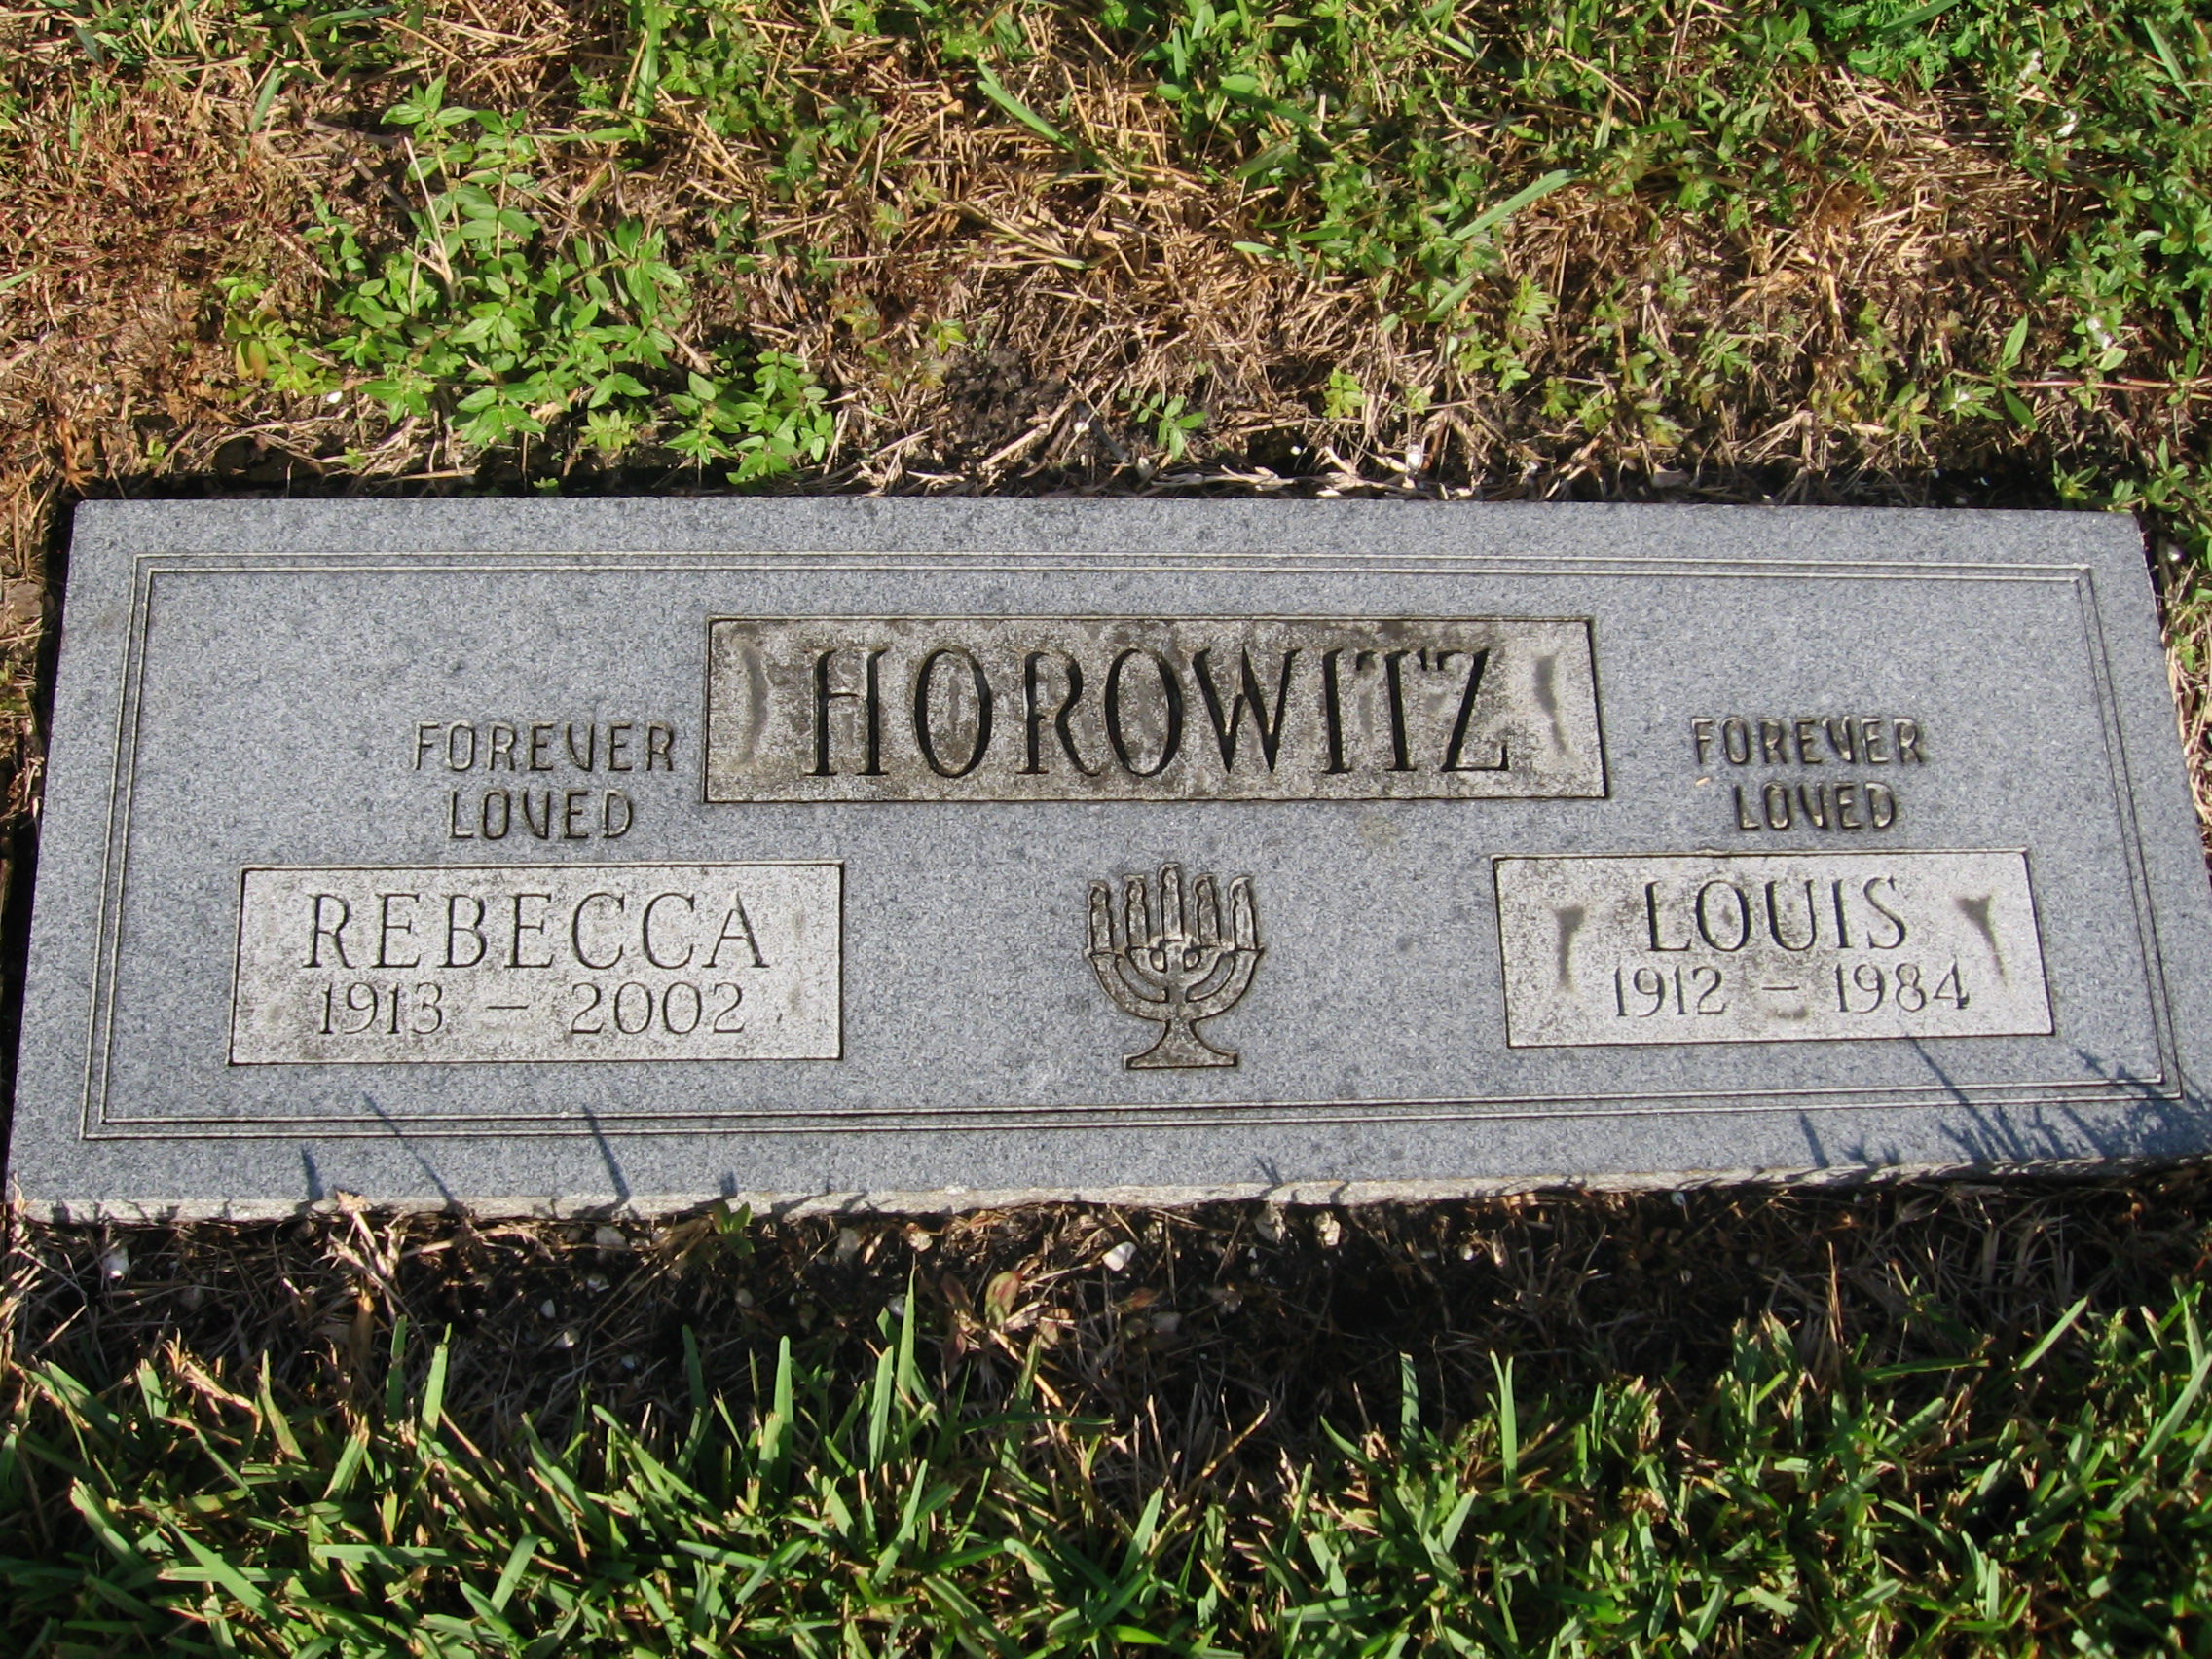 Louis Horowitz